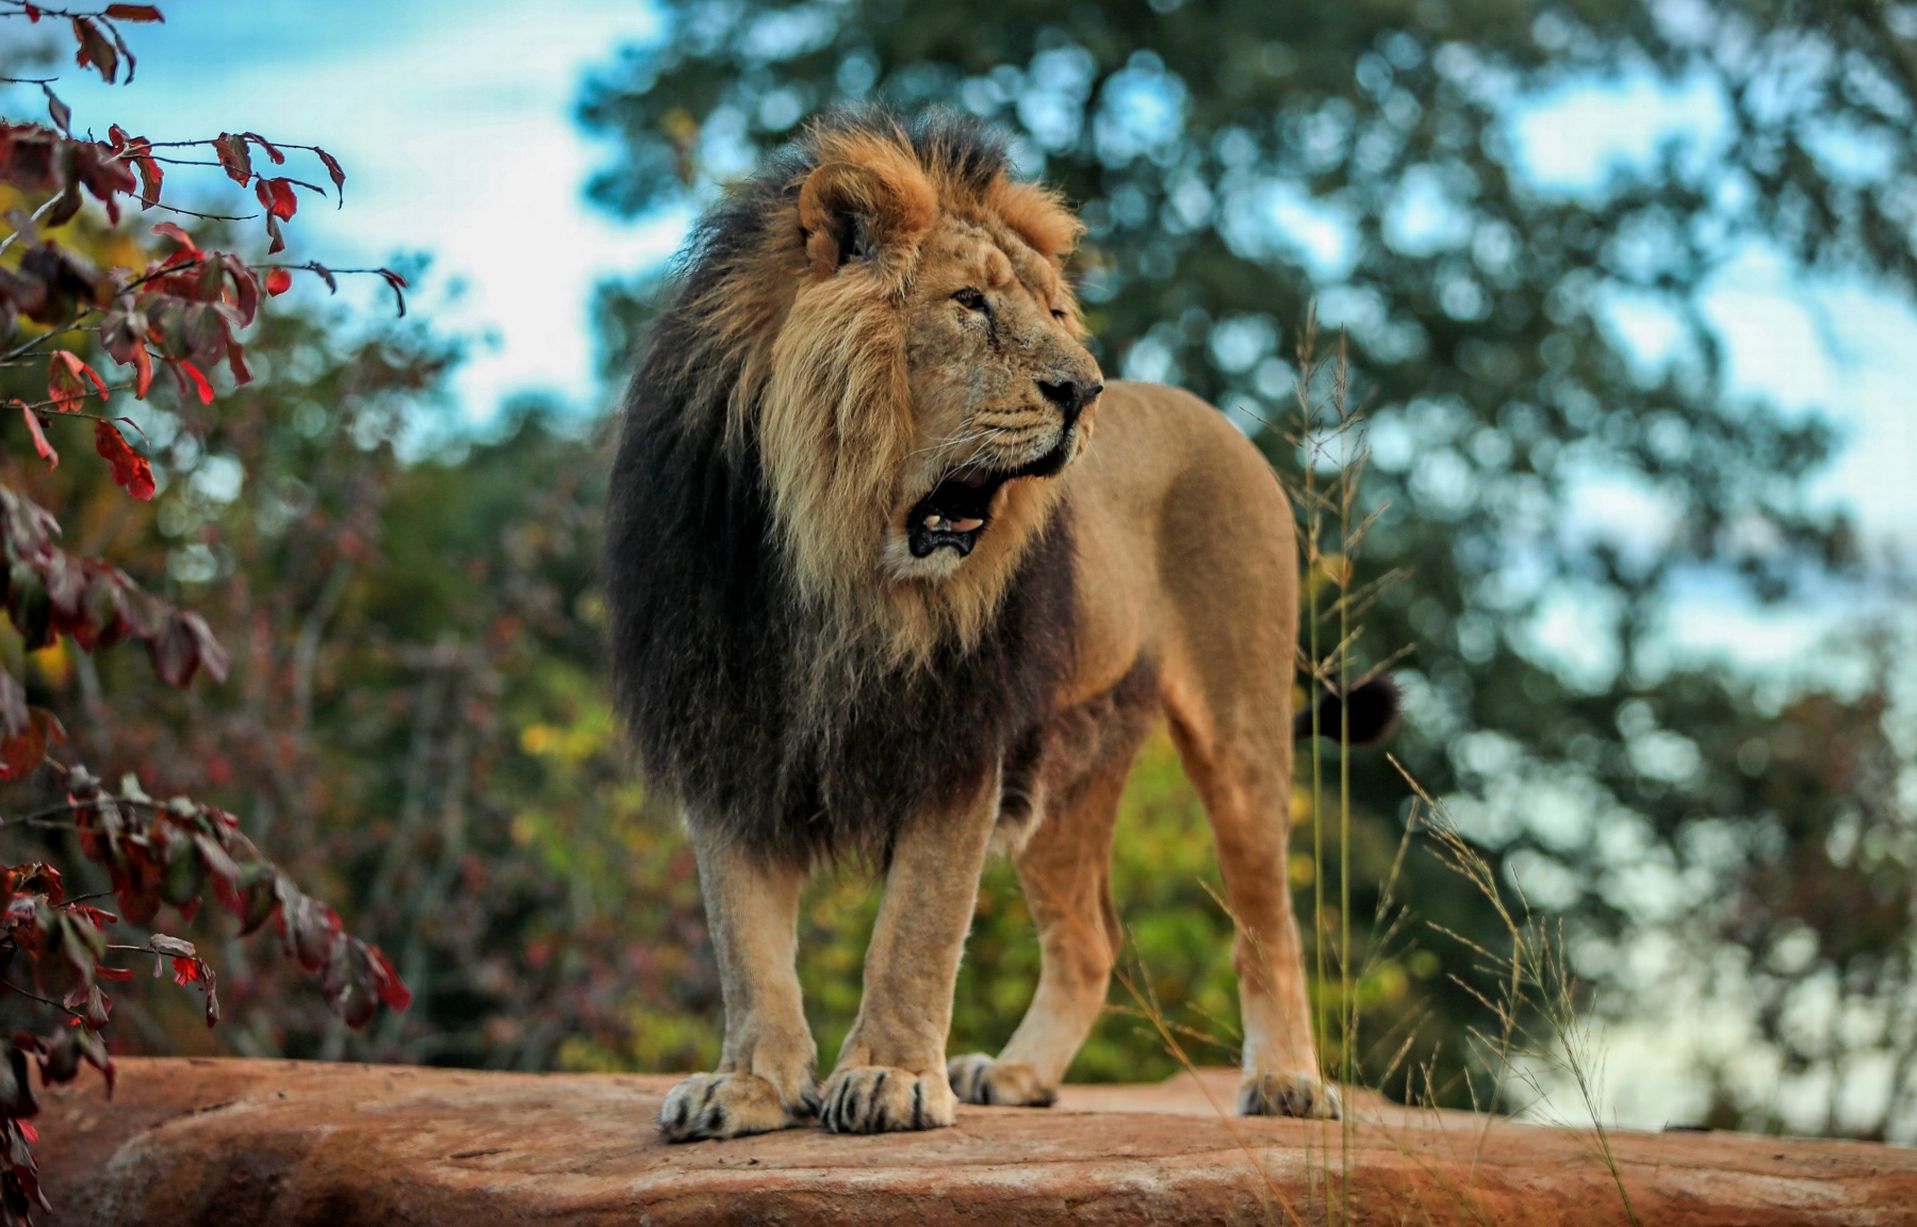 Con sư tử đẹp: Với sức mạnh và vẻ đẹp đầy uyển chuyển, con sư tử đẹp sẽ đem lại cho bạn một trải nghiệm tuyệt vời trên màn hình của bạn. Hình ảnh sống động và màu sắc tươi sáng sẽ khiến cho bạn thích thú và hết sức sảng khoái. Hãy tận hưởng những giây phút vui vẻ và thư giãn với hình nền con sư tử đẹp!